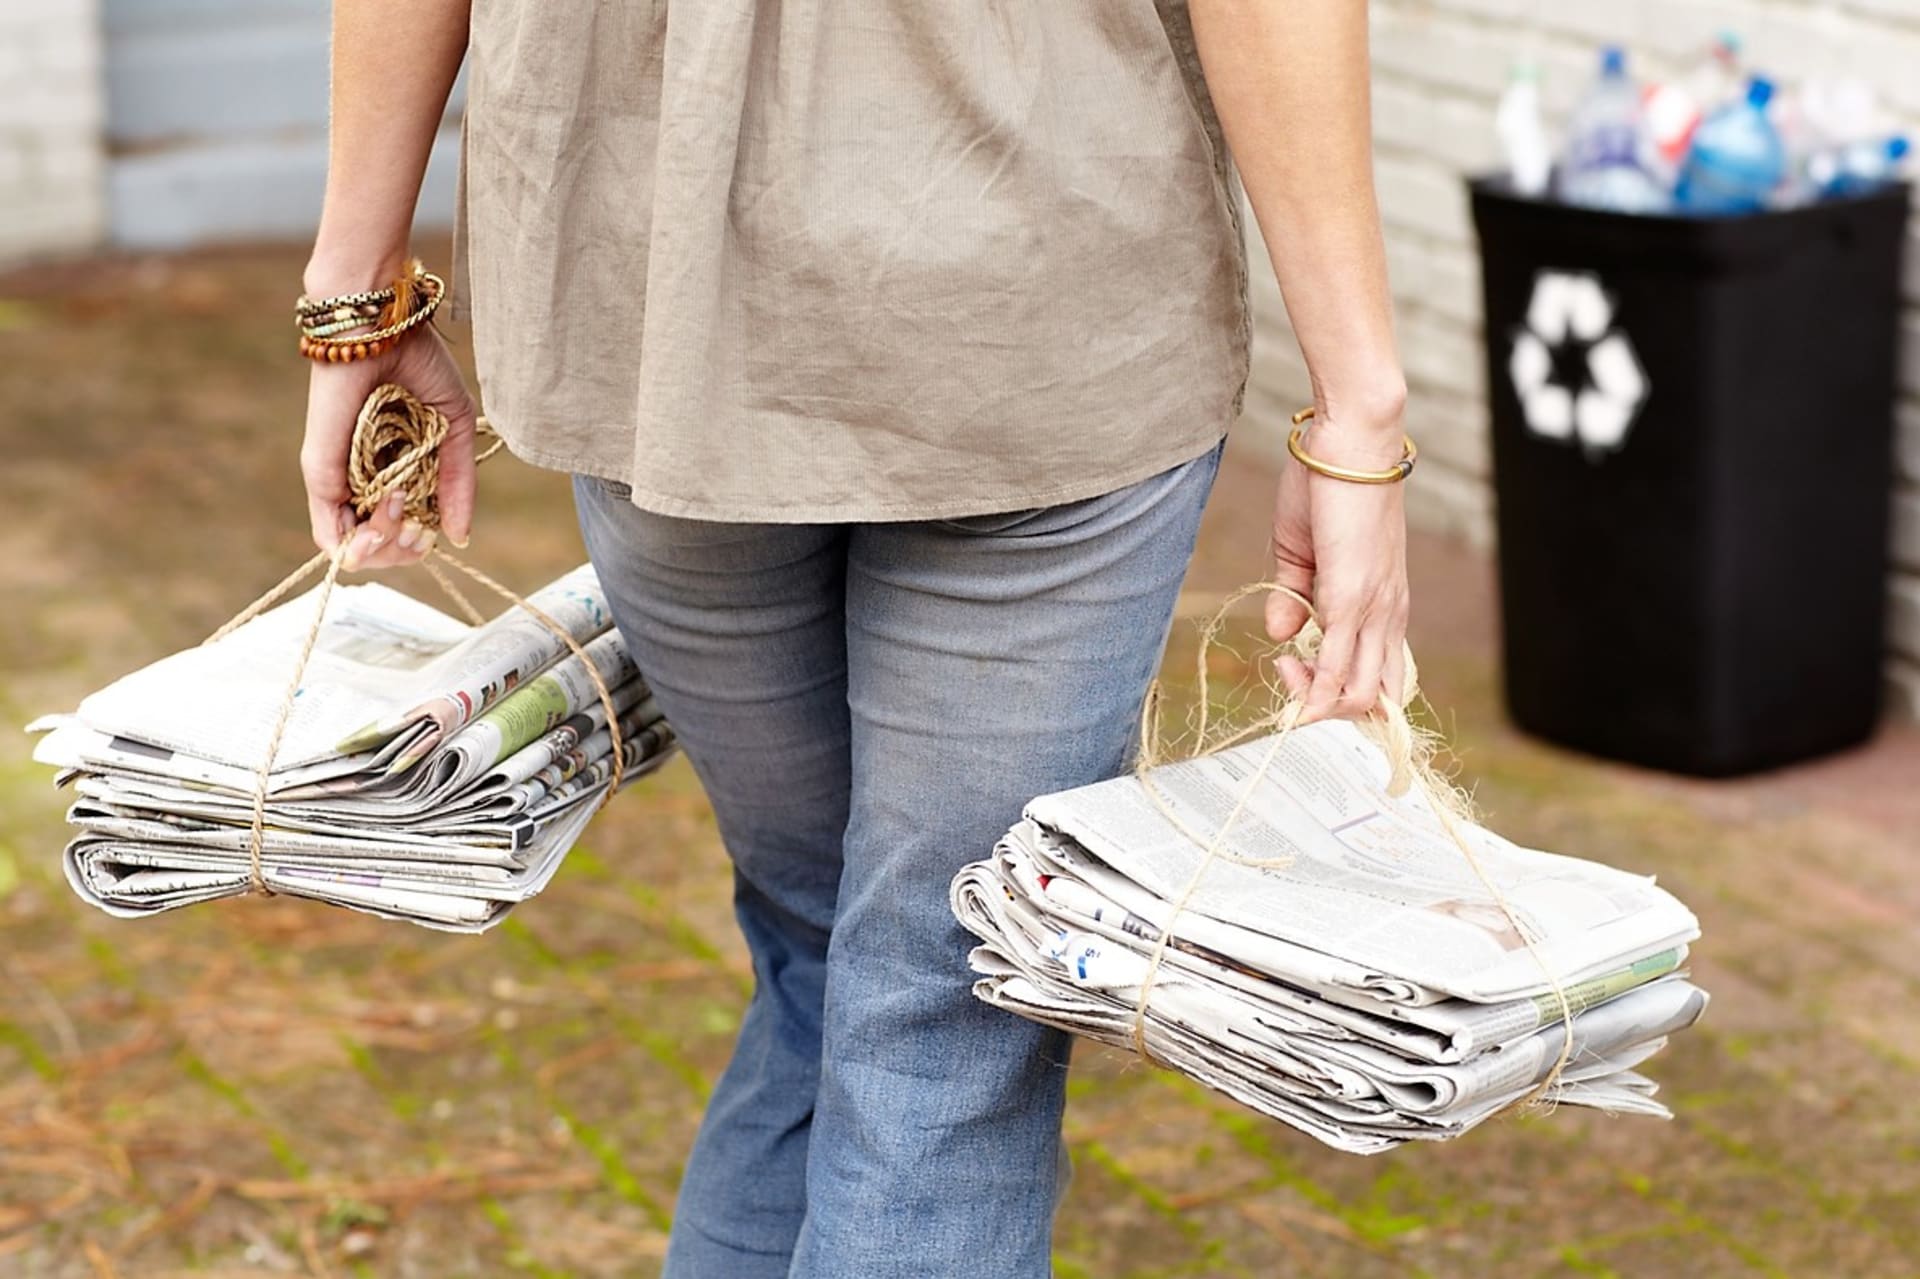  Past na škvory,  pohlcovač pachů, vysoušeč bot, mulč i žehlicí prkno. Mrkněte na 11 triků, jak využít staré noviny!